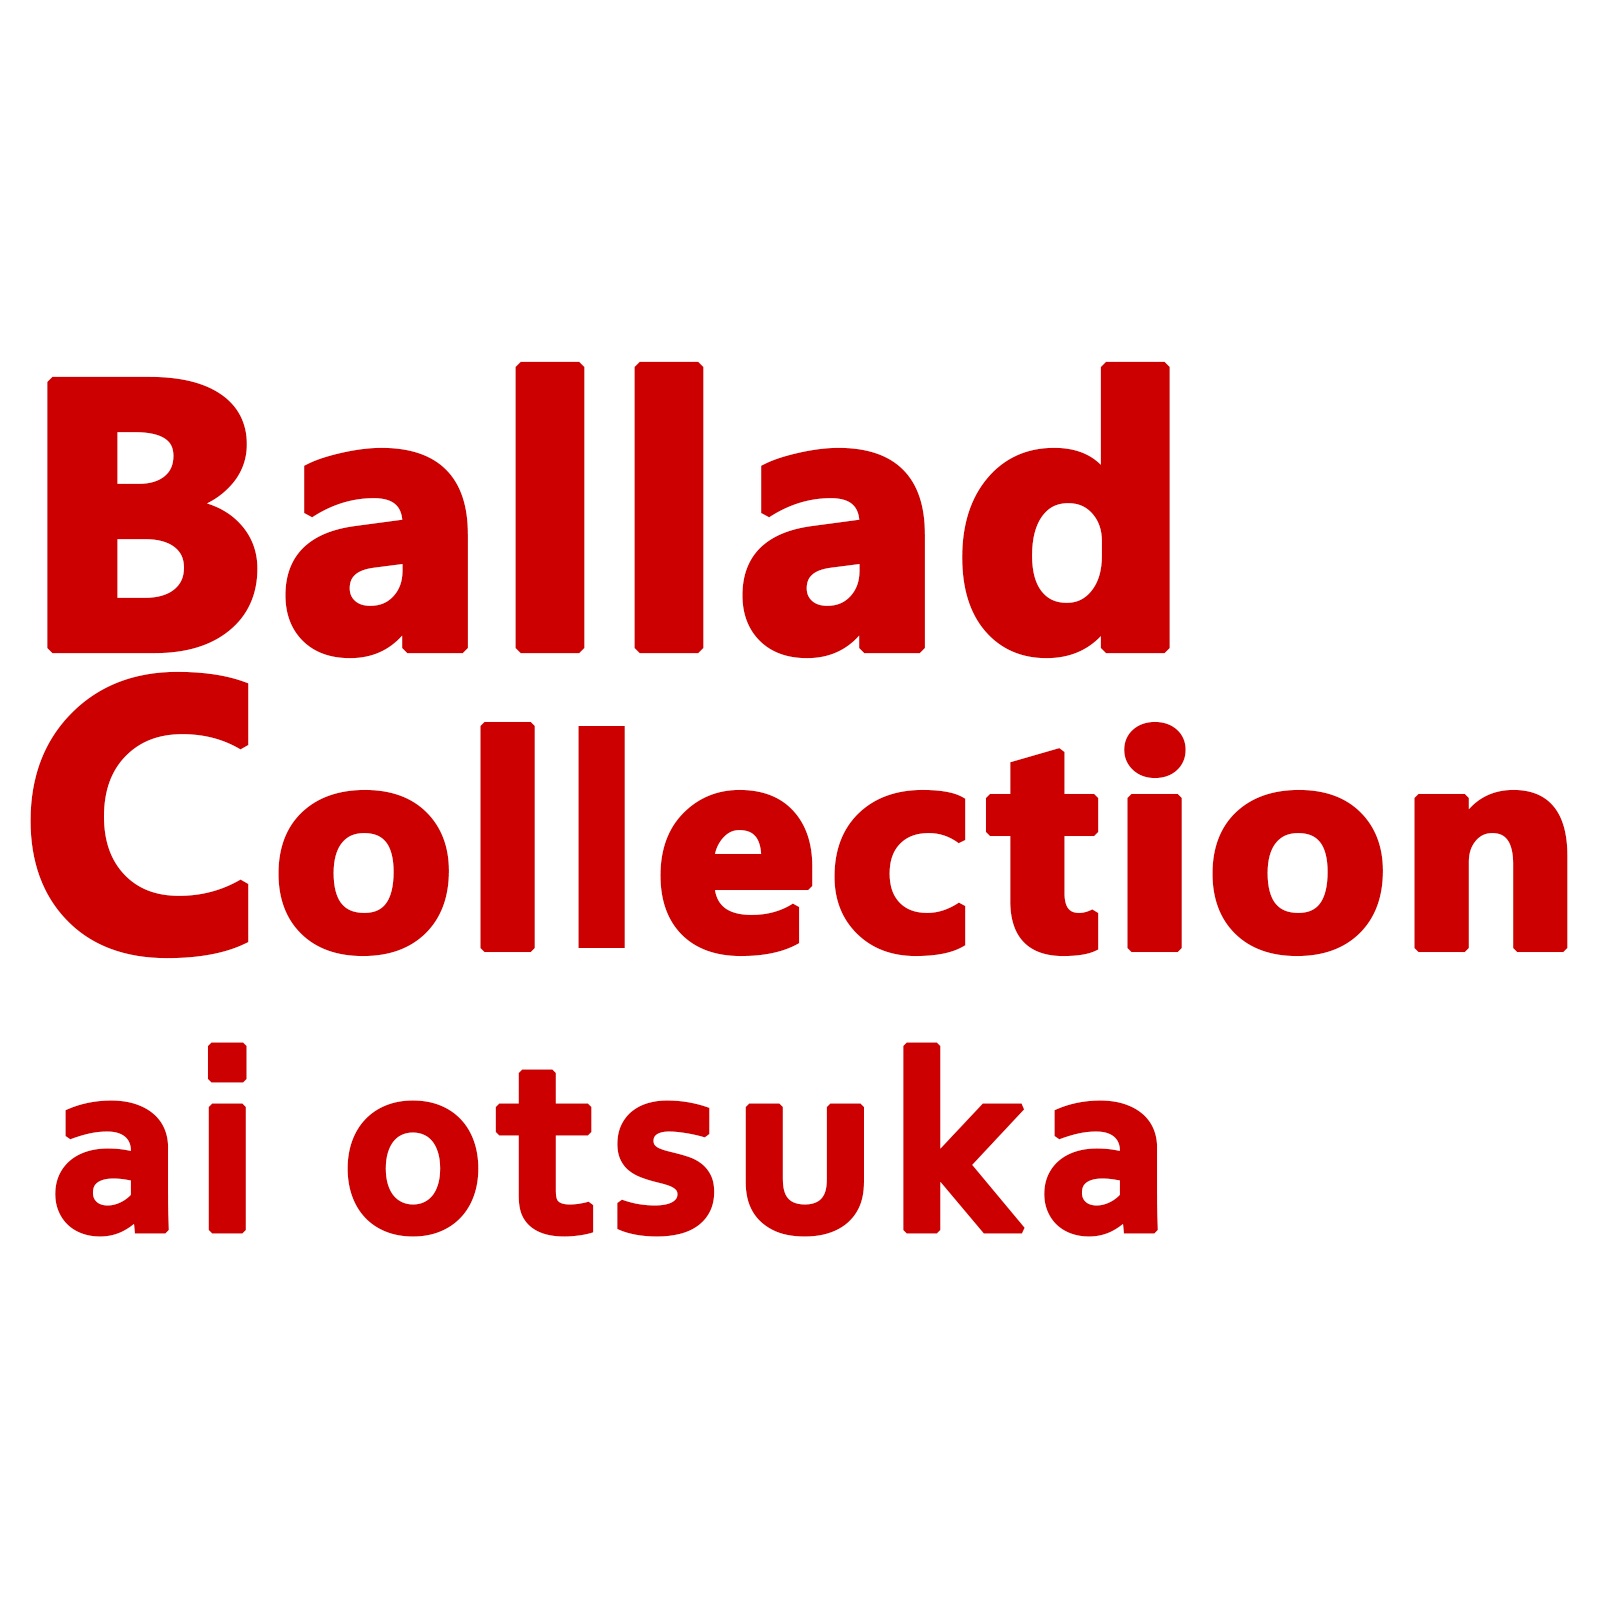 Ballad Collection